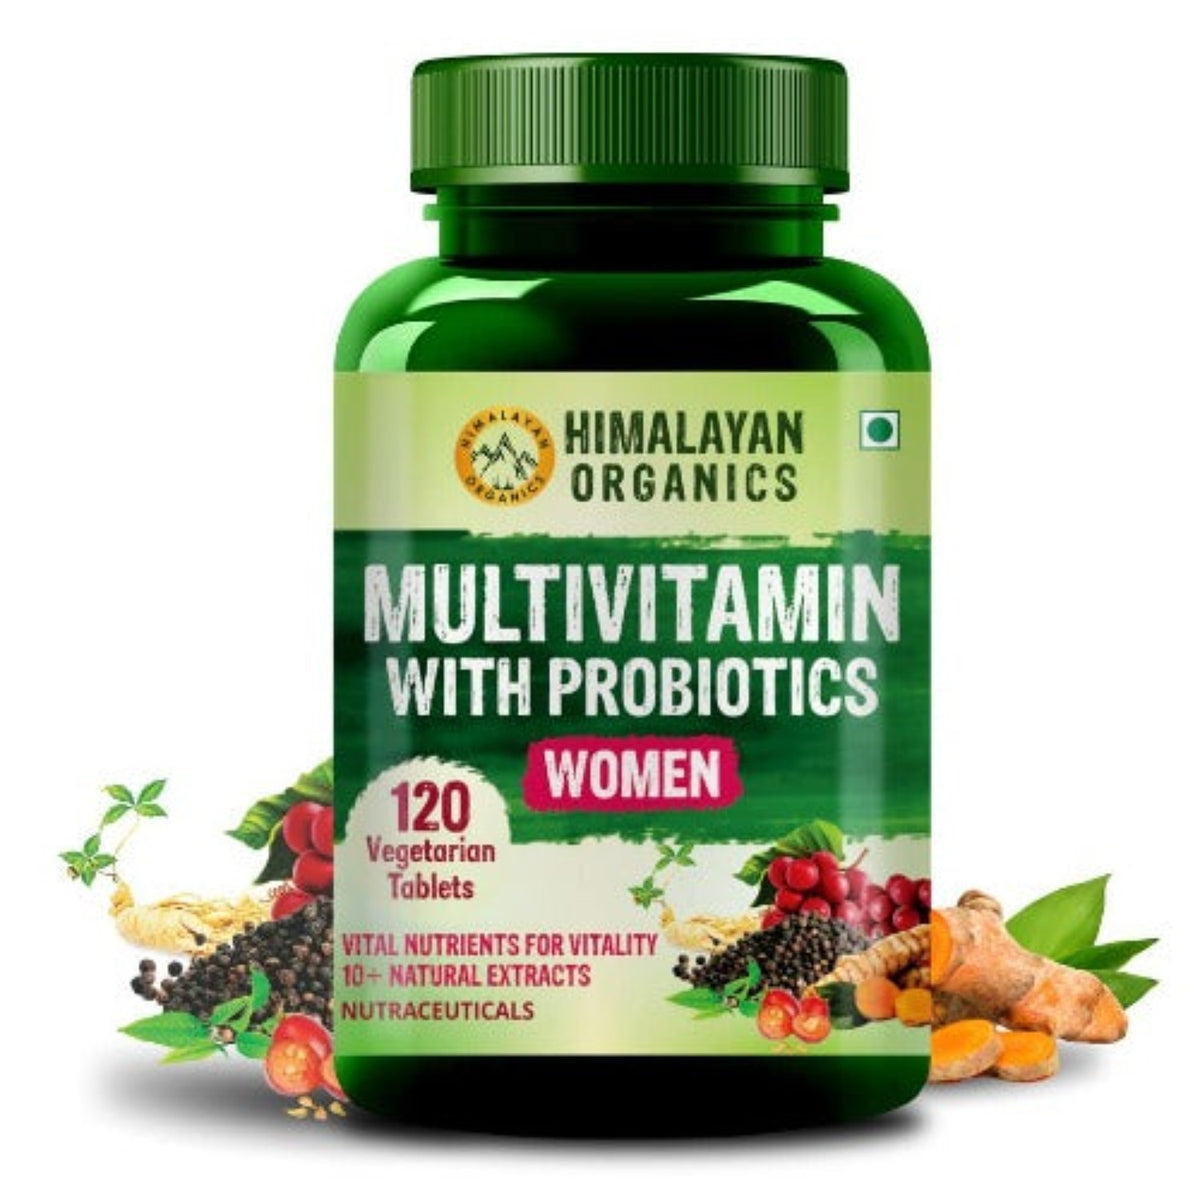 Himalayan Organics Multivitamin mit Probiotika für Frauen, 120 vegetarische Tabletten (60 + natürliche Extrakte, essentielle Vitamine und Mineralien, Vitamin D3, B12, Kalzium, Curcumin und Biotin)